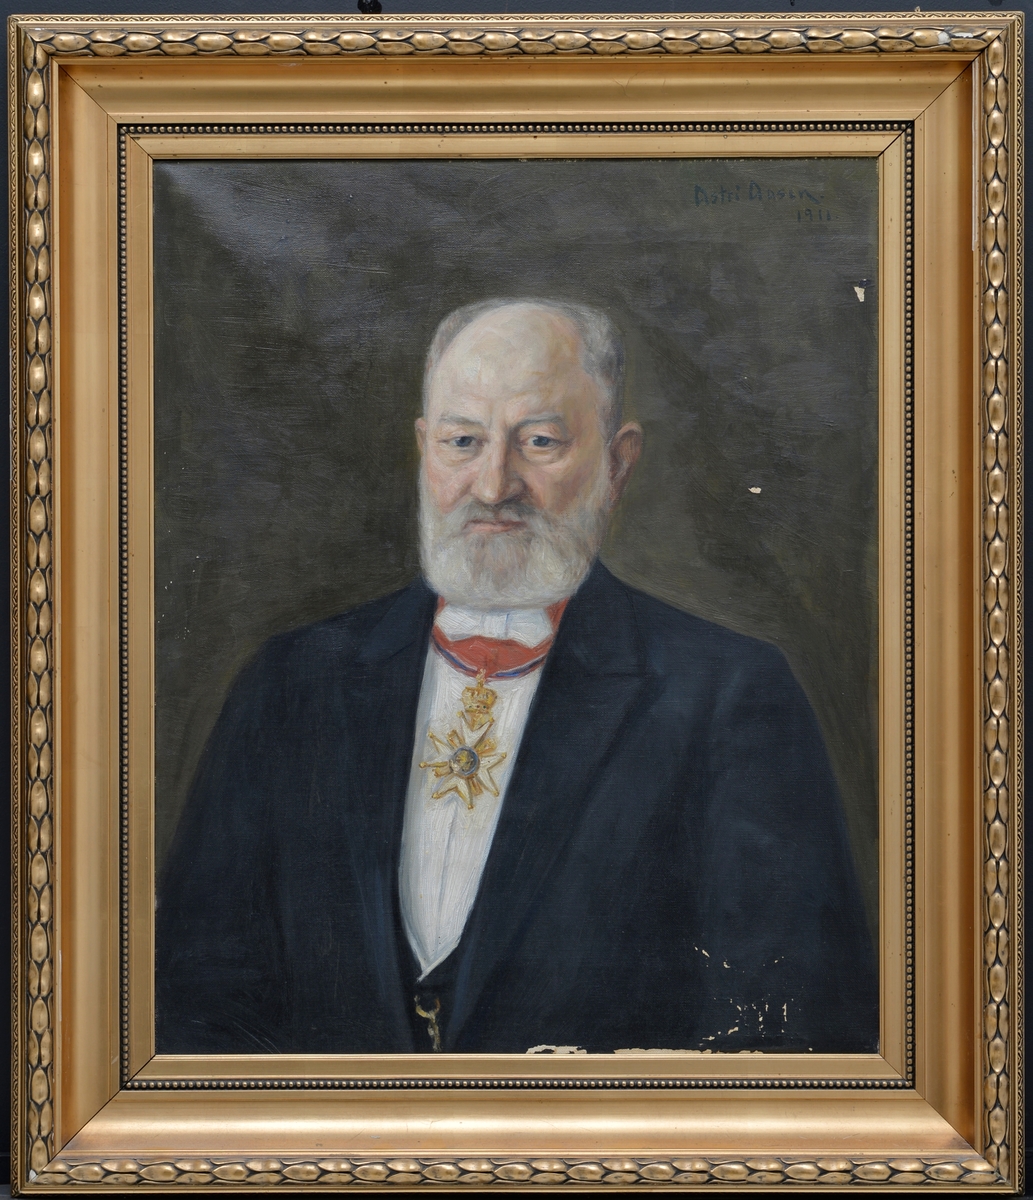 Malt portrett av Bård Iversen med St. Olavs Orden.